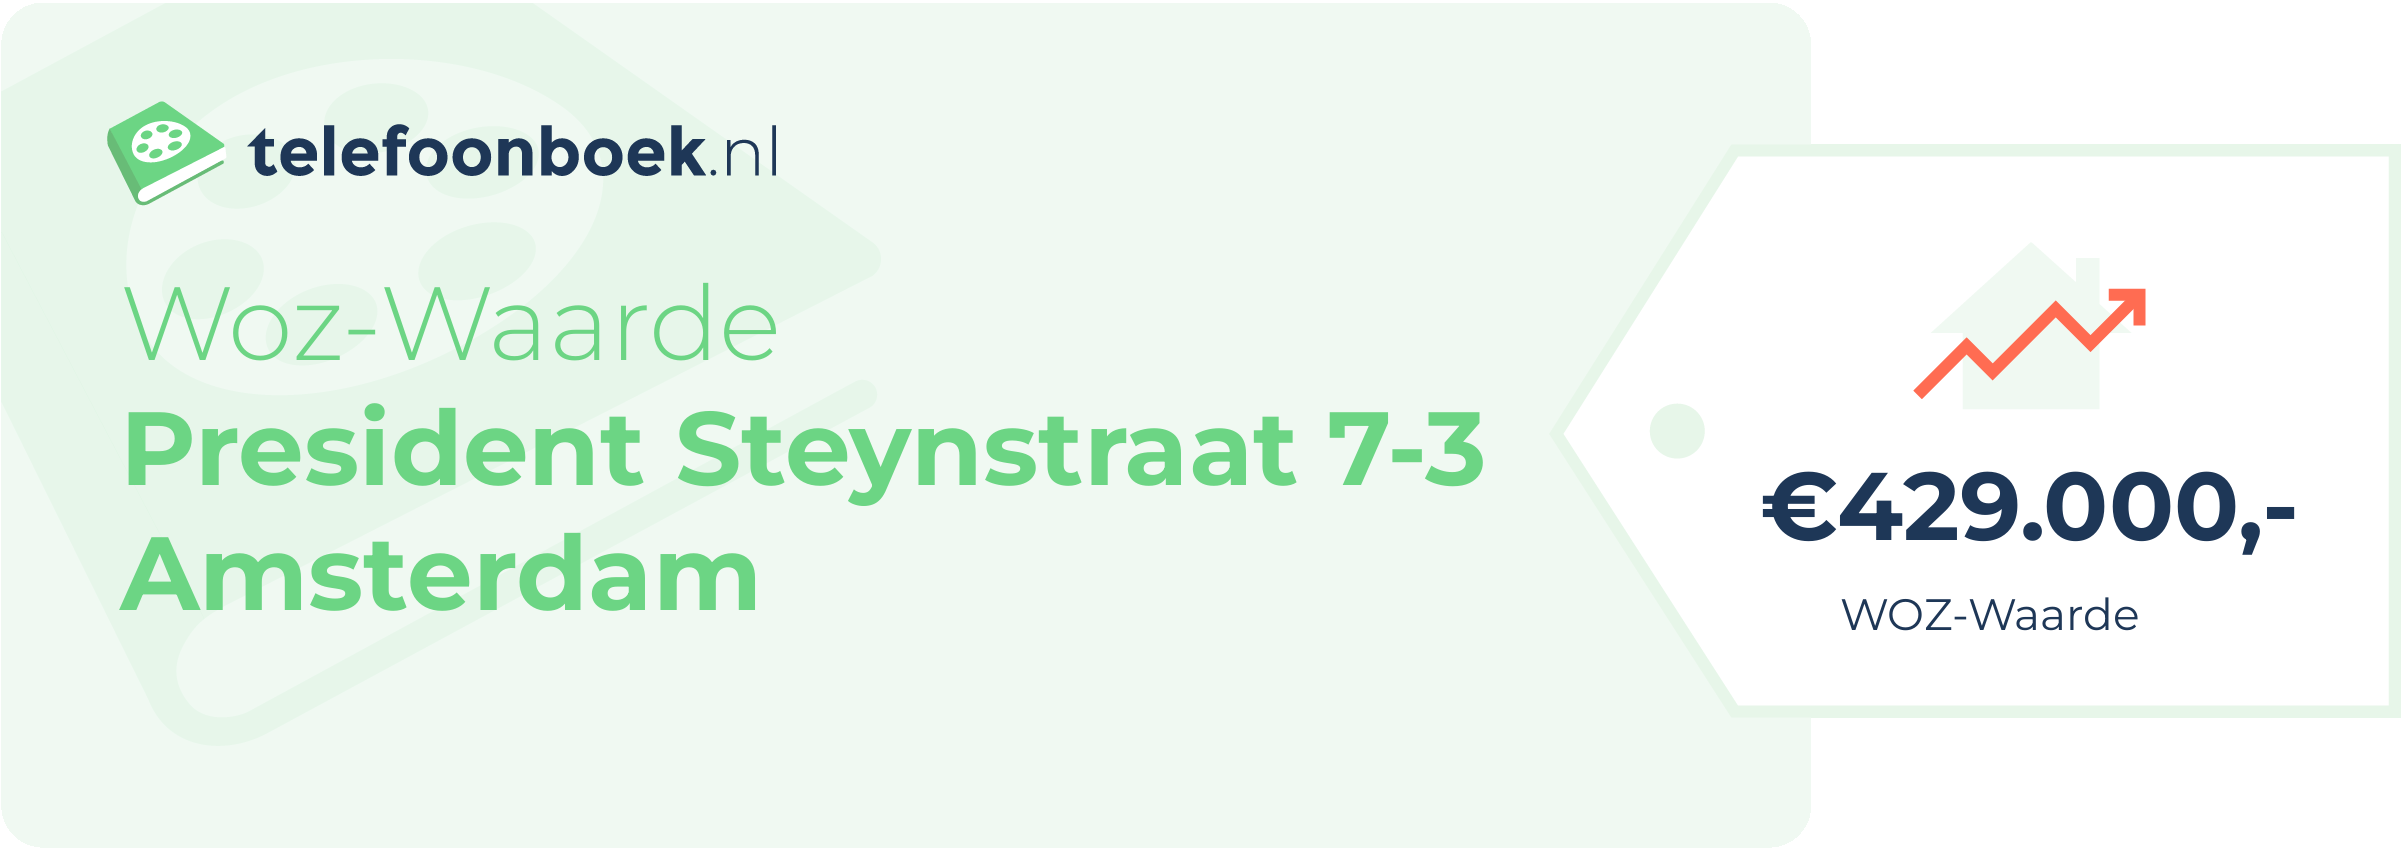 WOZ-waarde President Steynstraat 7-3 Amsterdam